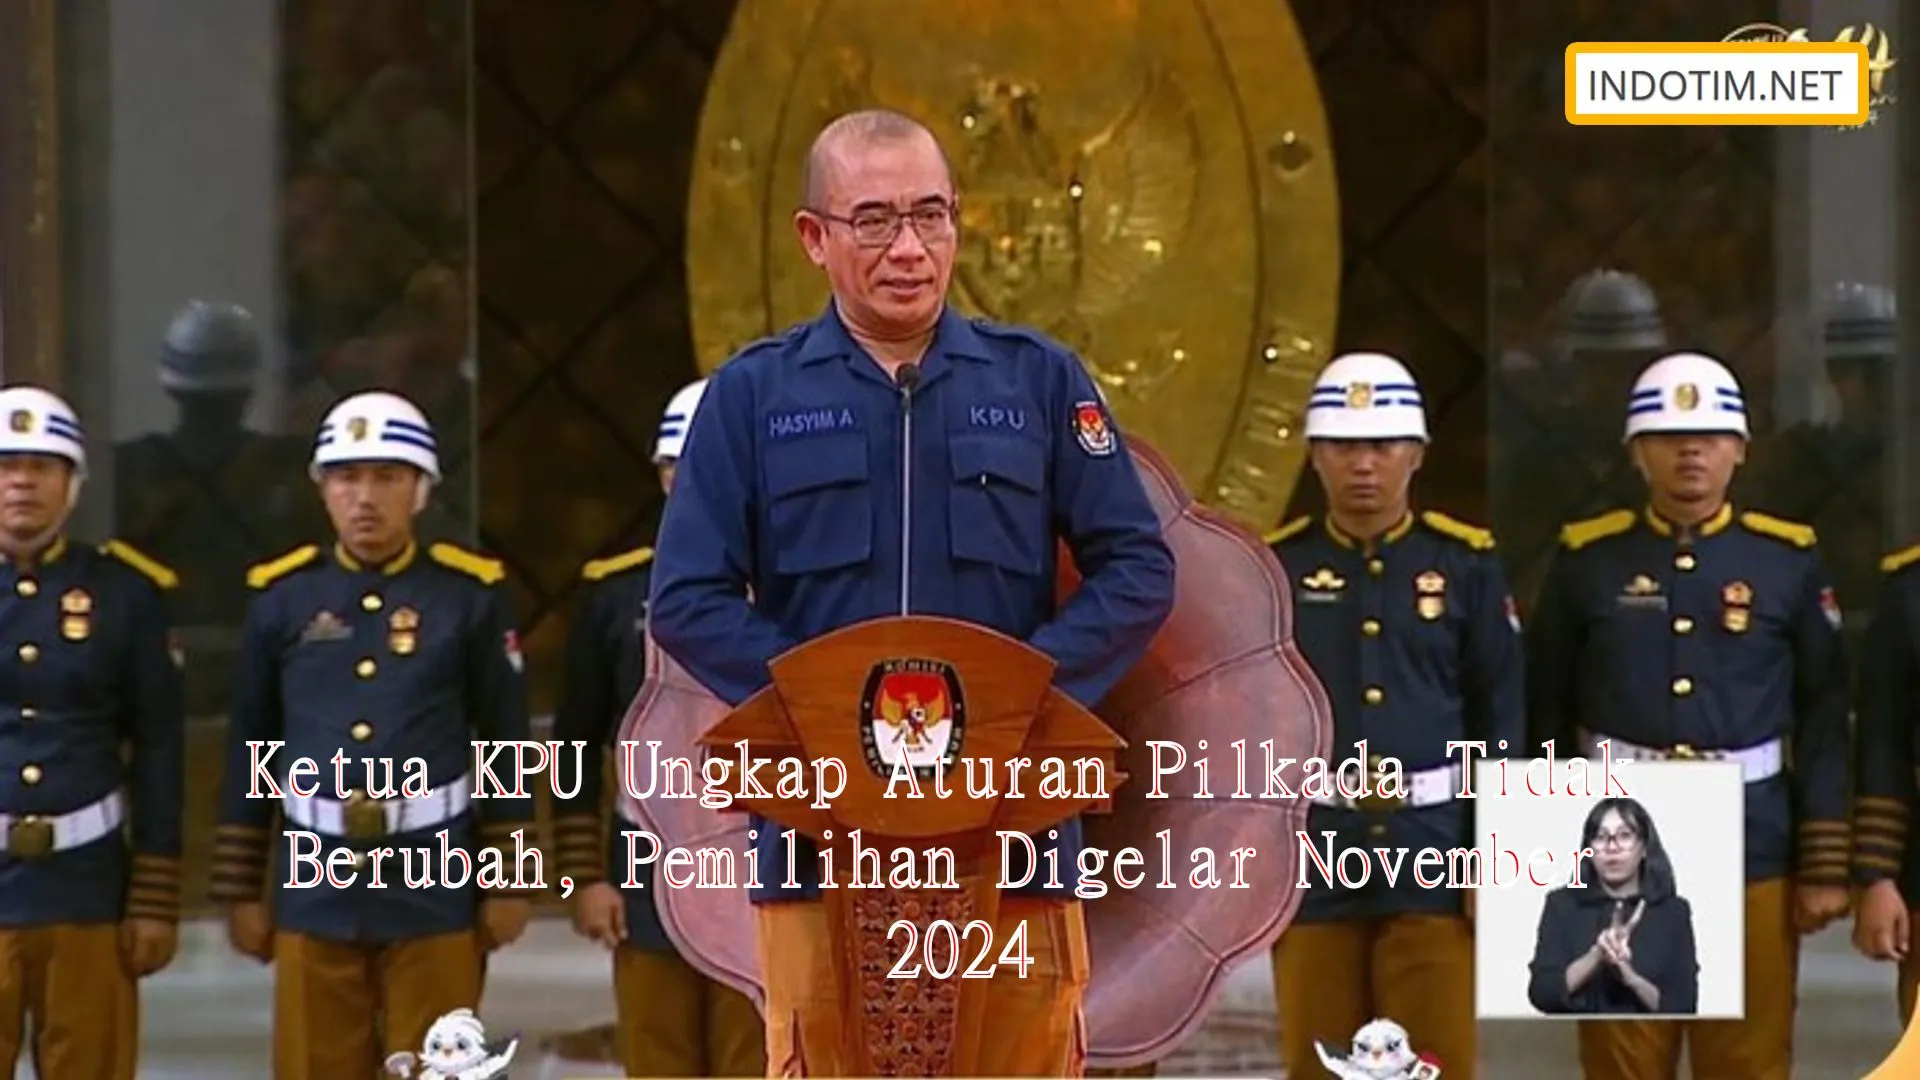 Ketua KPU Ungkap Aturan Pilkada Tidak Berubah, Pemilihan Digelar November 2024